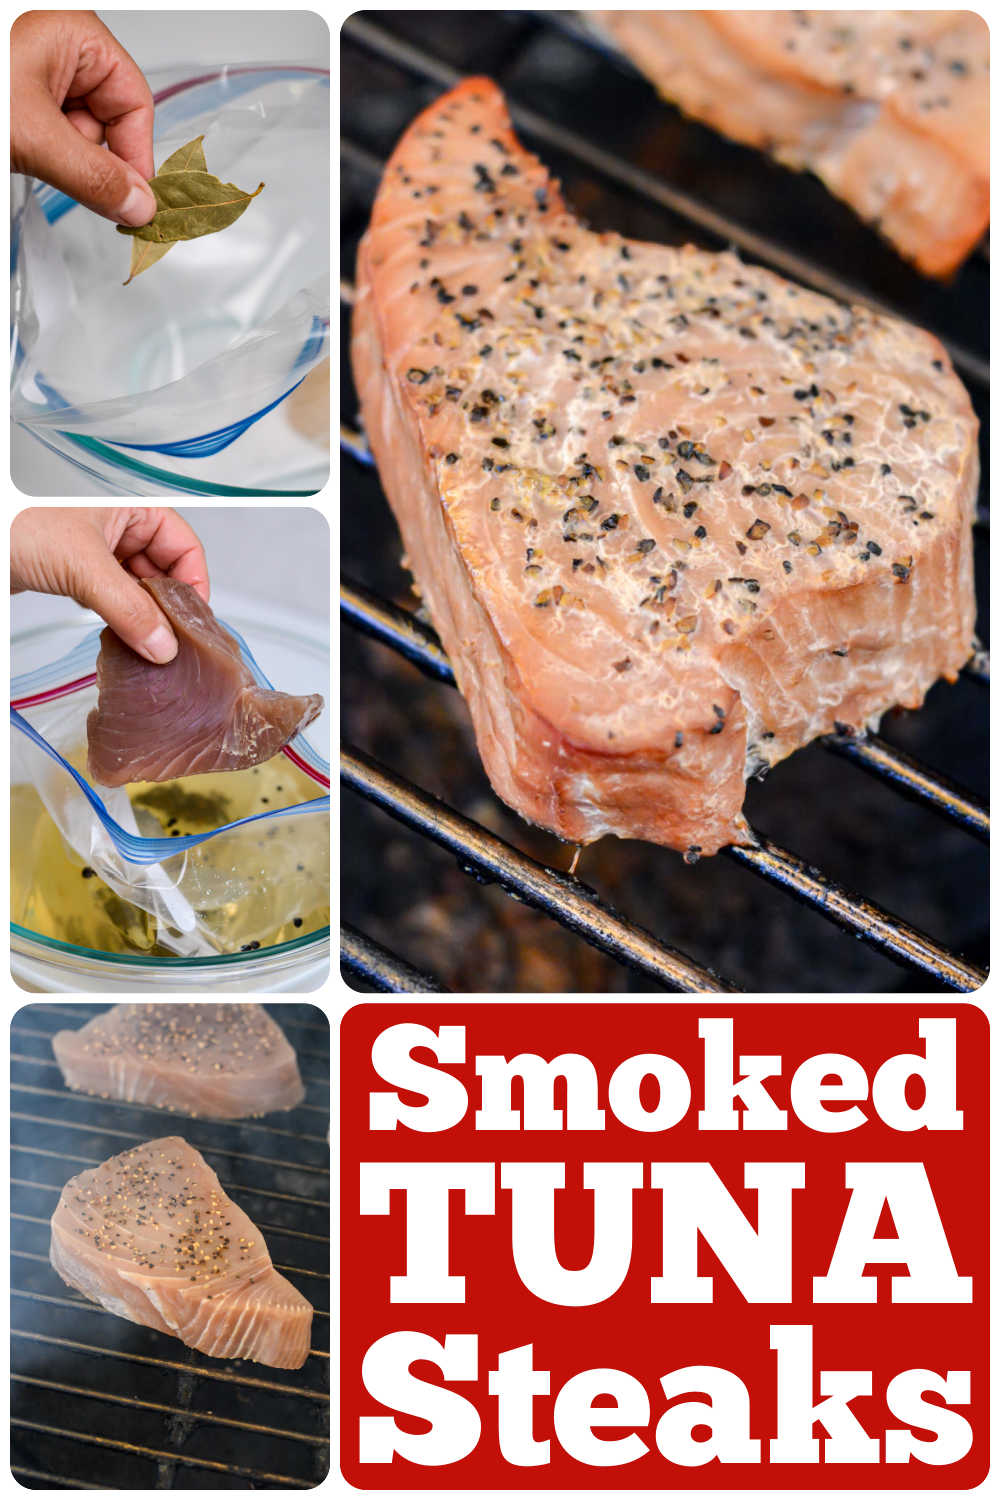 Smoked Tuna Steaks